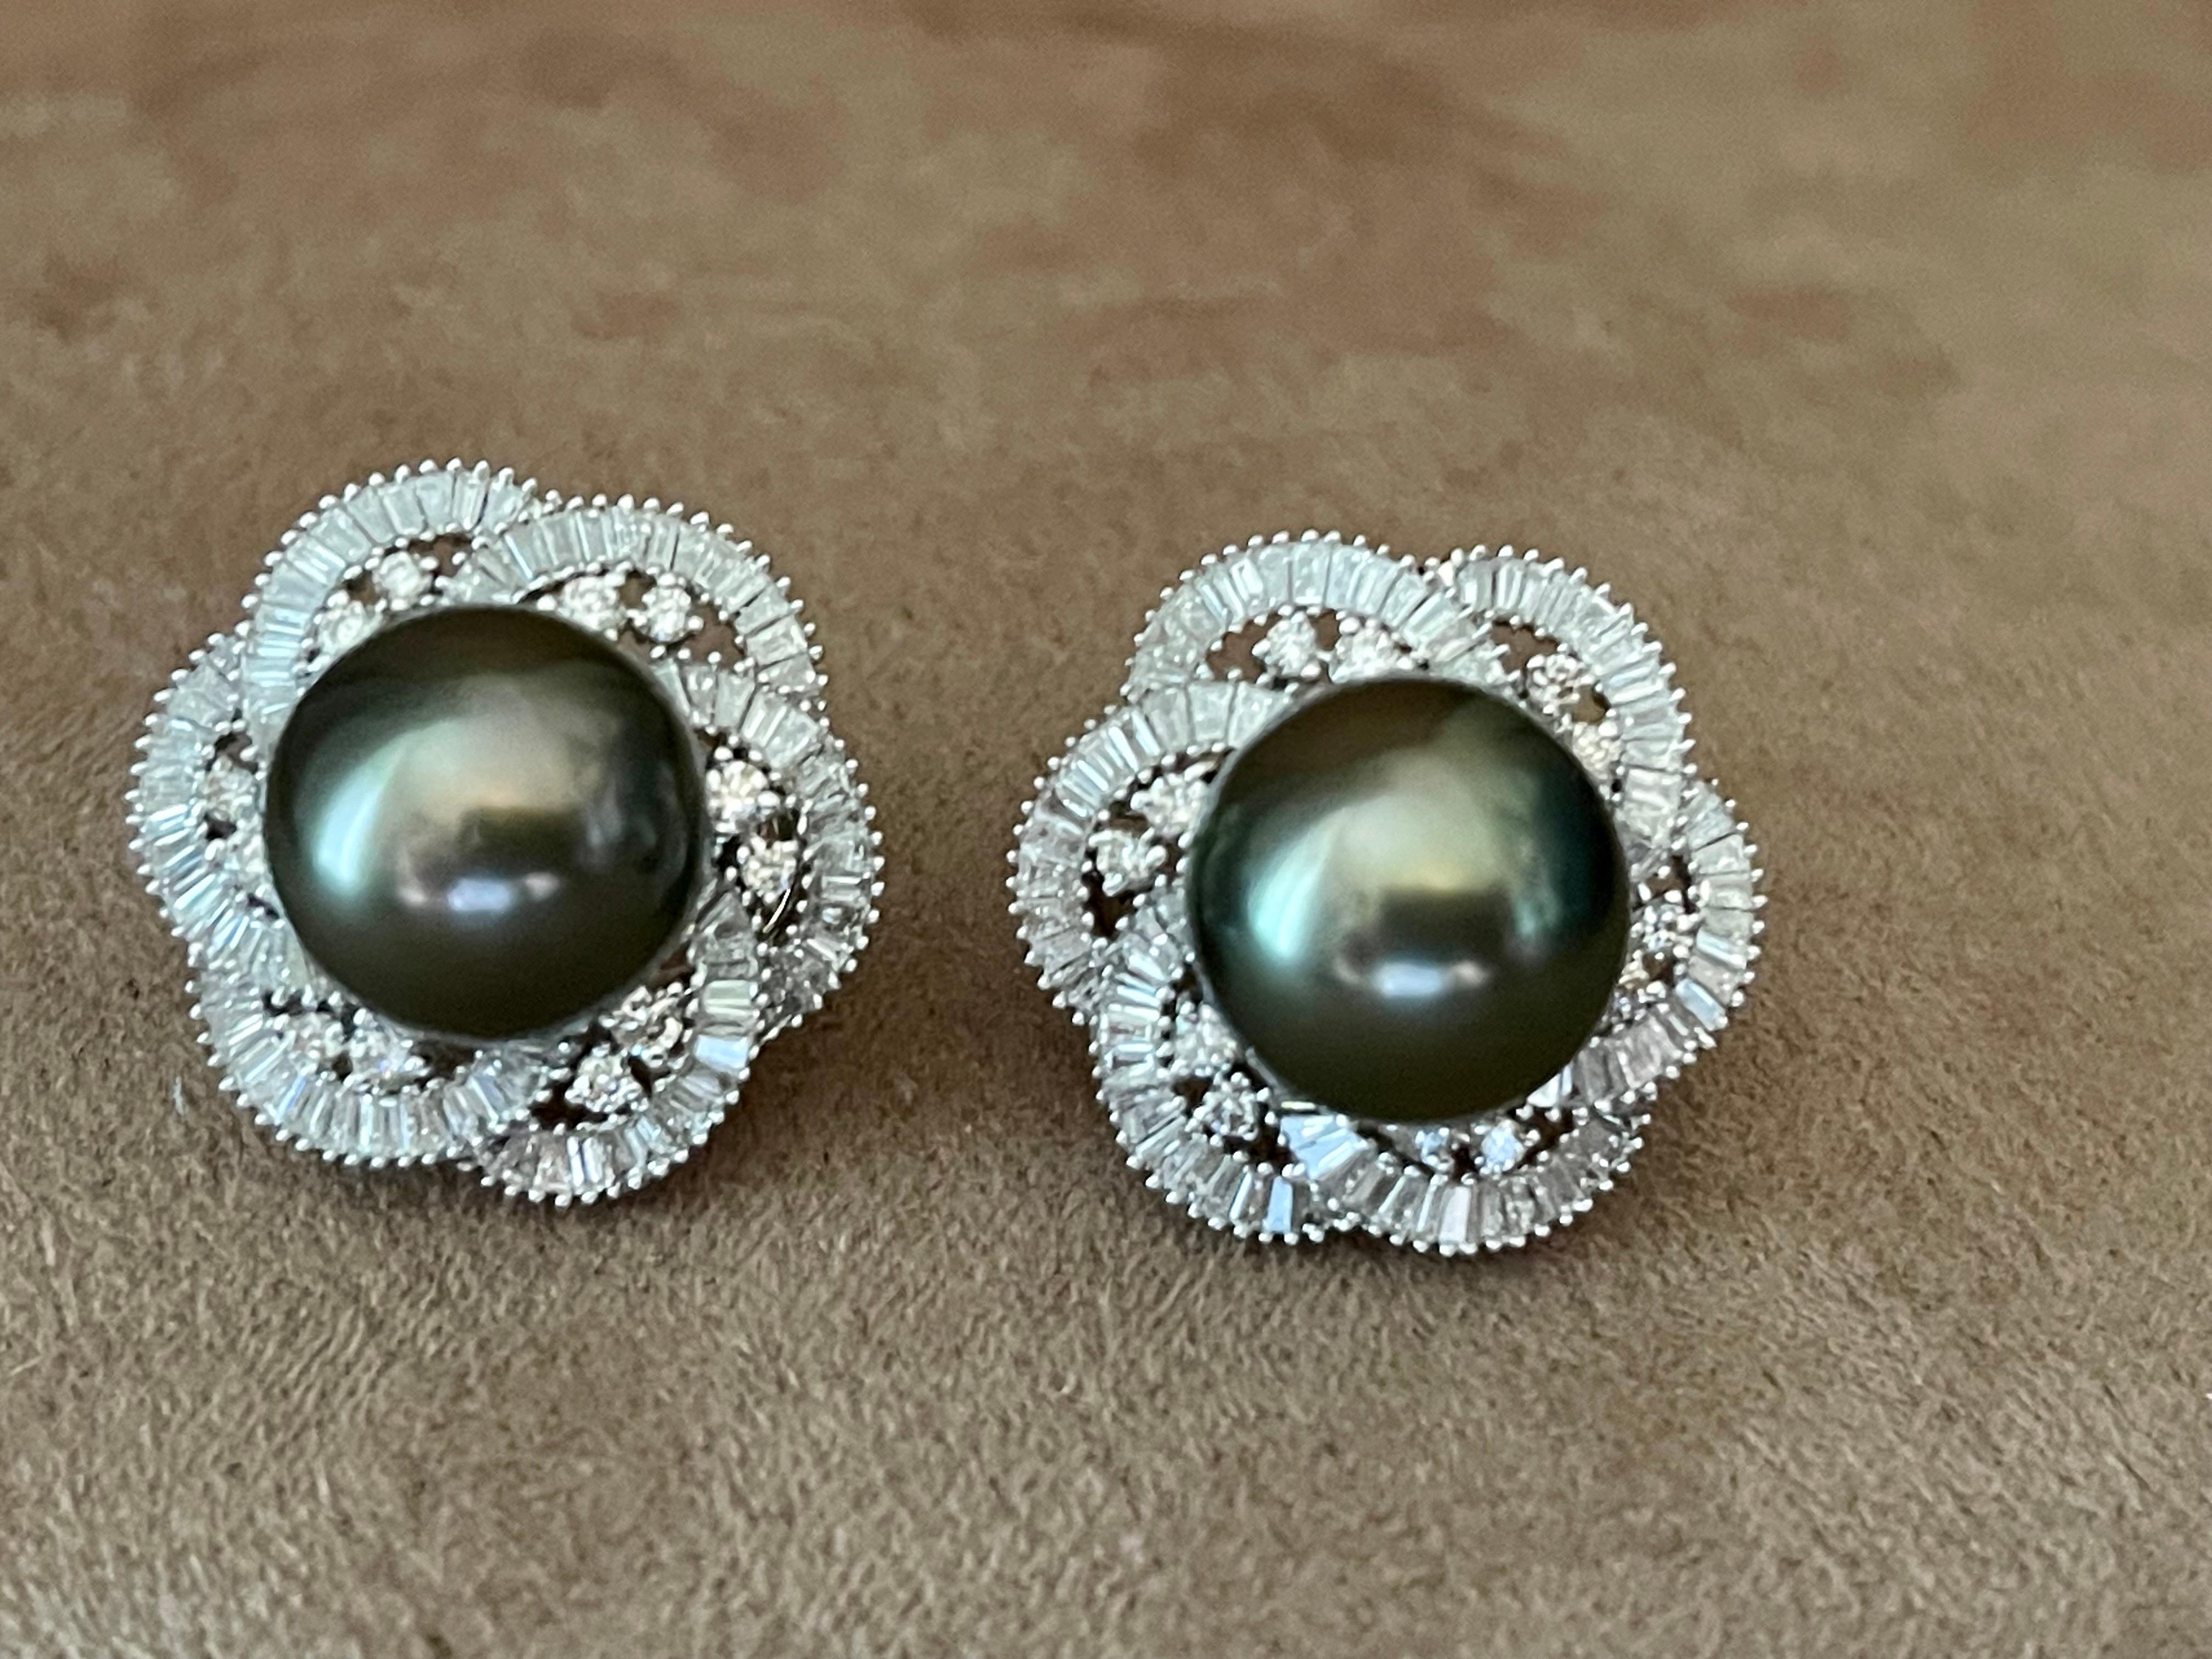 Une paire de boucles d'oreilles intemporelles en or blanc 18 K comprenant 2 perles de Tahiti mesurant environ 12 mm entourées d'un halo composé de 24 diamants de taille brillant pesant 0,55 ct et de 167 diamants baguette effilés pesant 1,25 ct. Ces